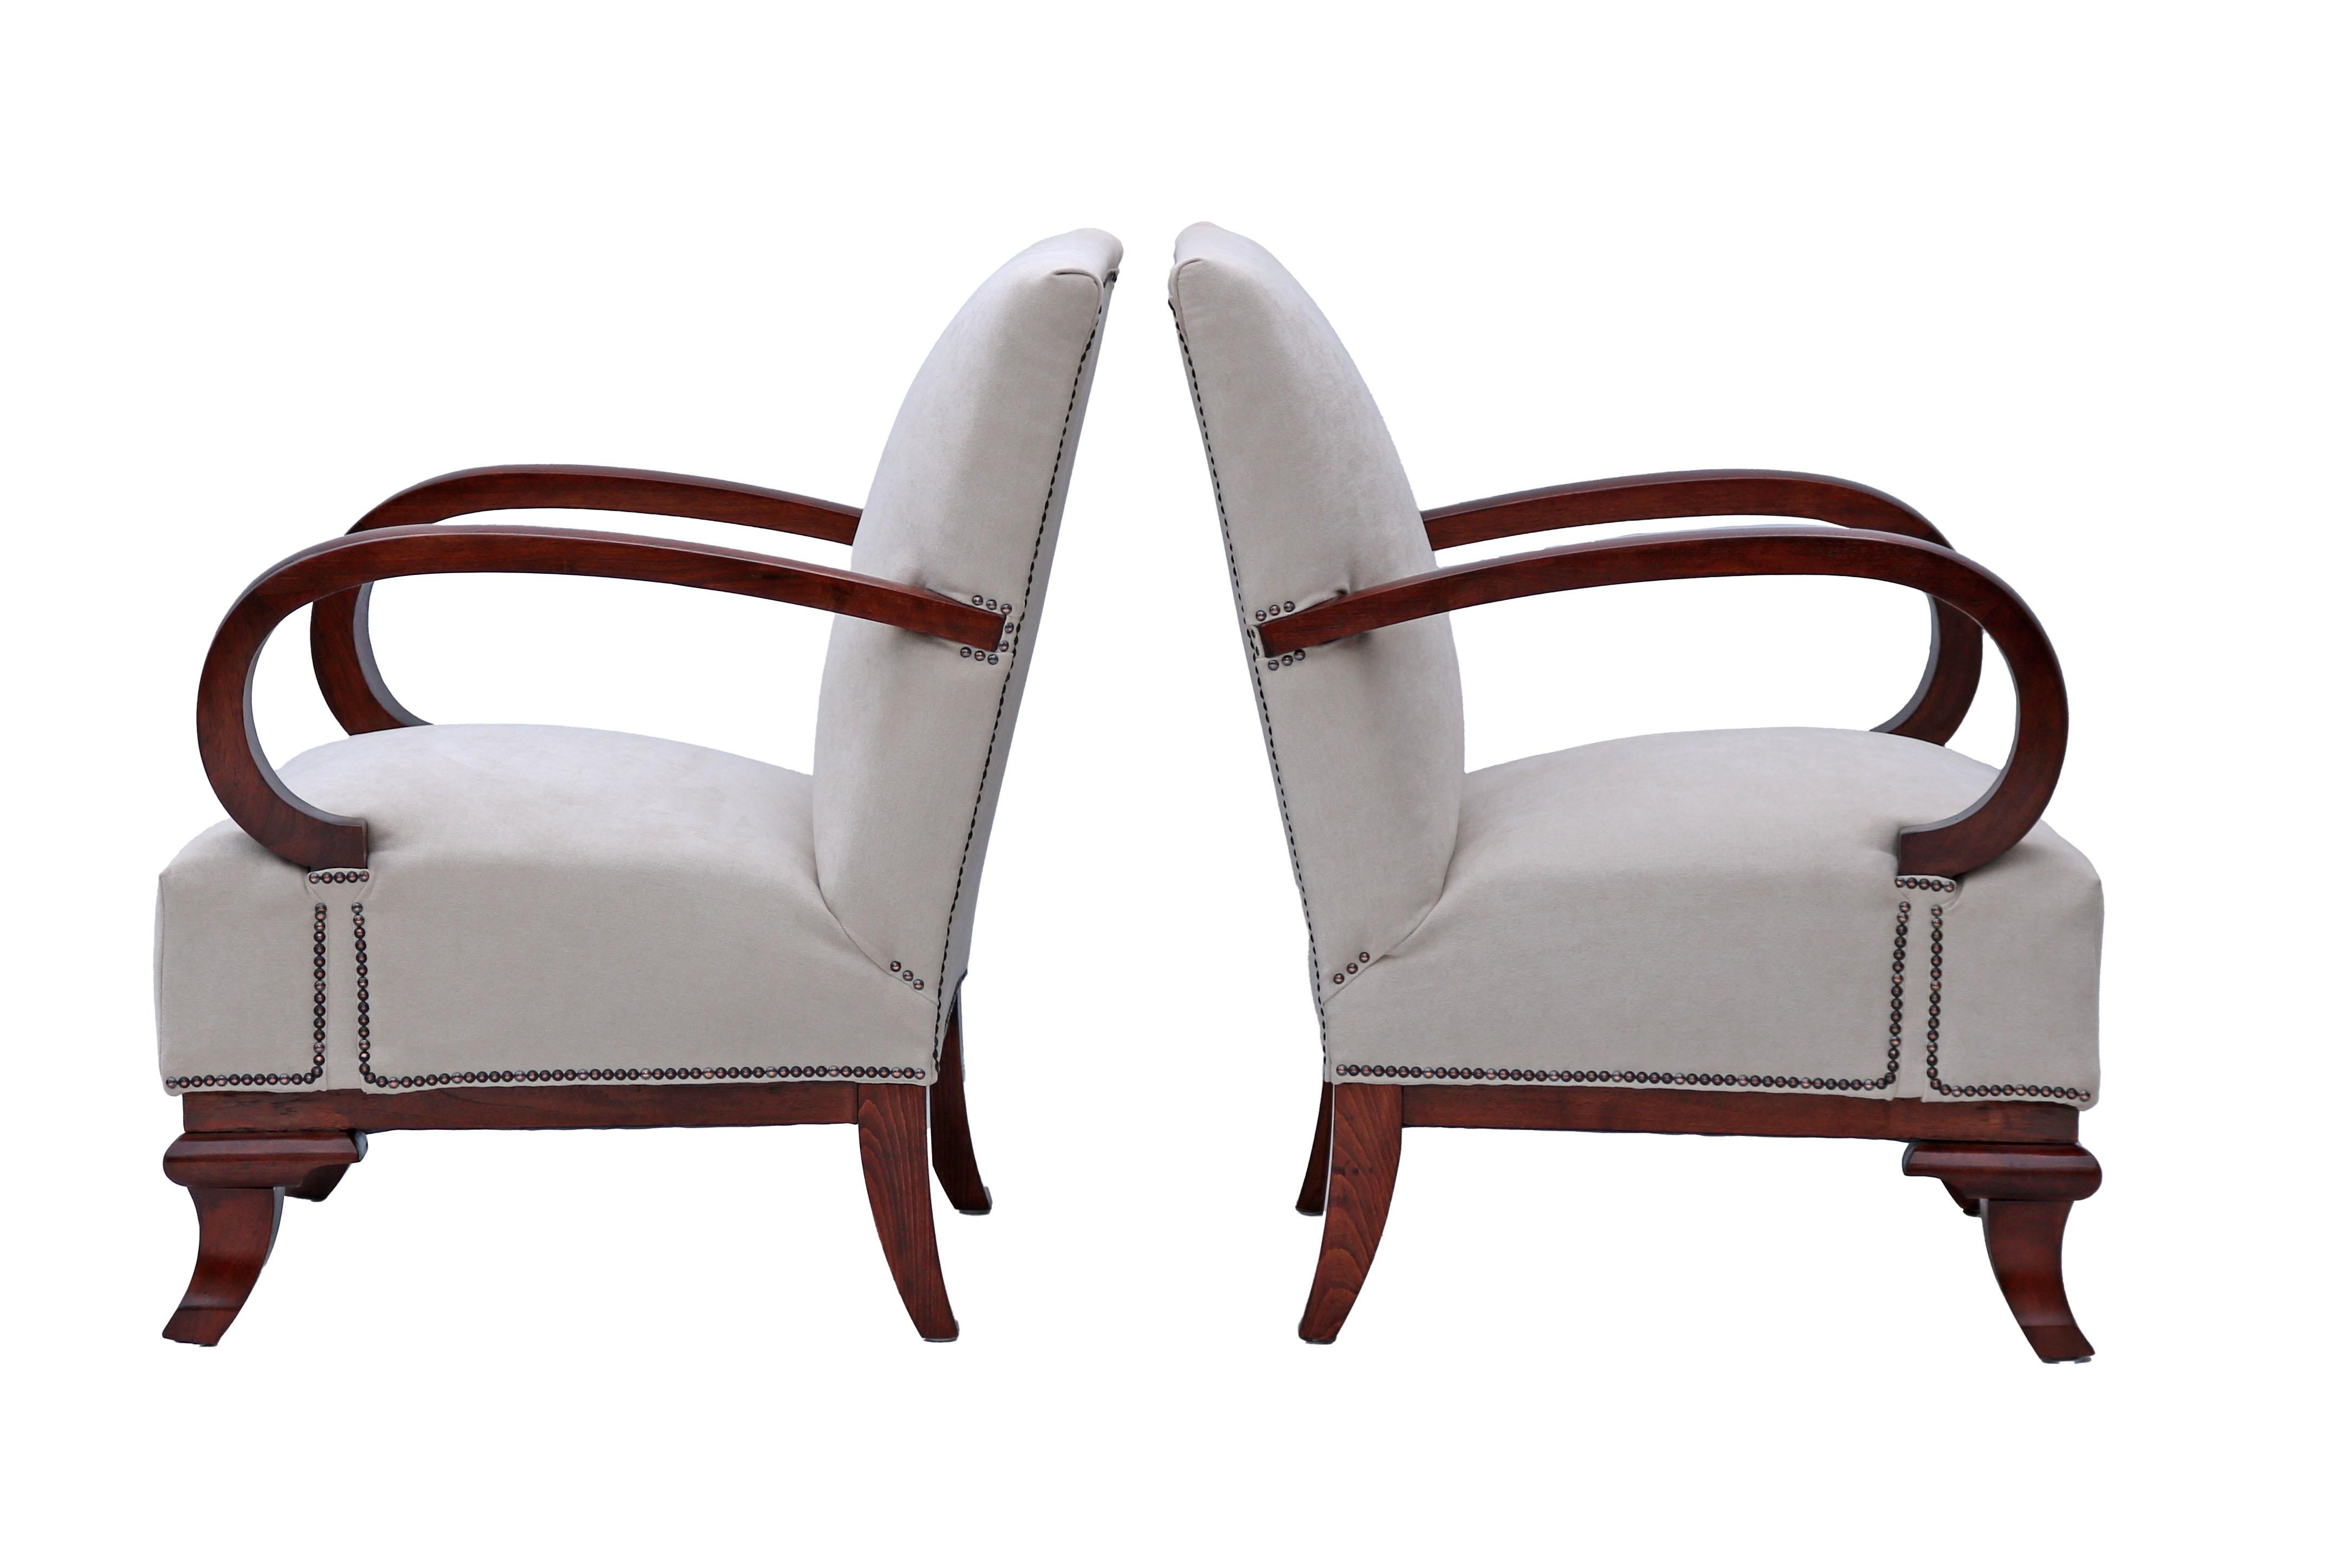 Une paire de fauteuils Art Deco, entièrement restaurés, conçus par Lajos Kozma. Ces fauteuils offrent une assise très confortable. Leur aspect épuré et élégant rehaussera votre pièce.